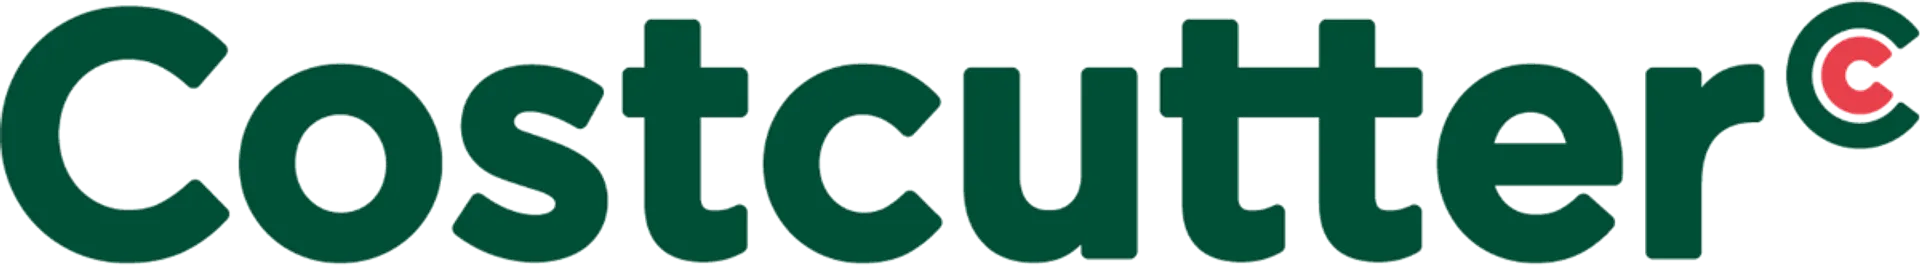 COSTCUTTER logo